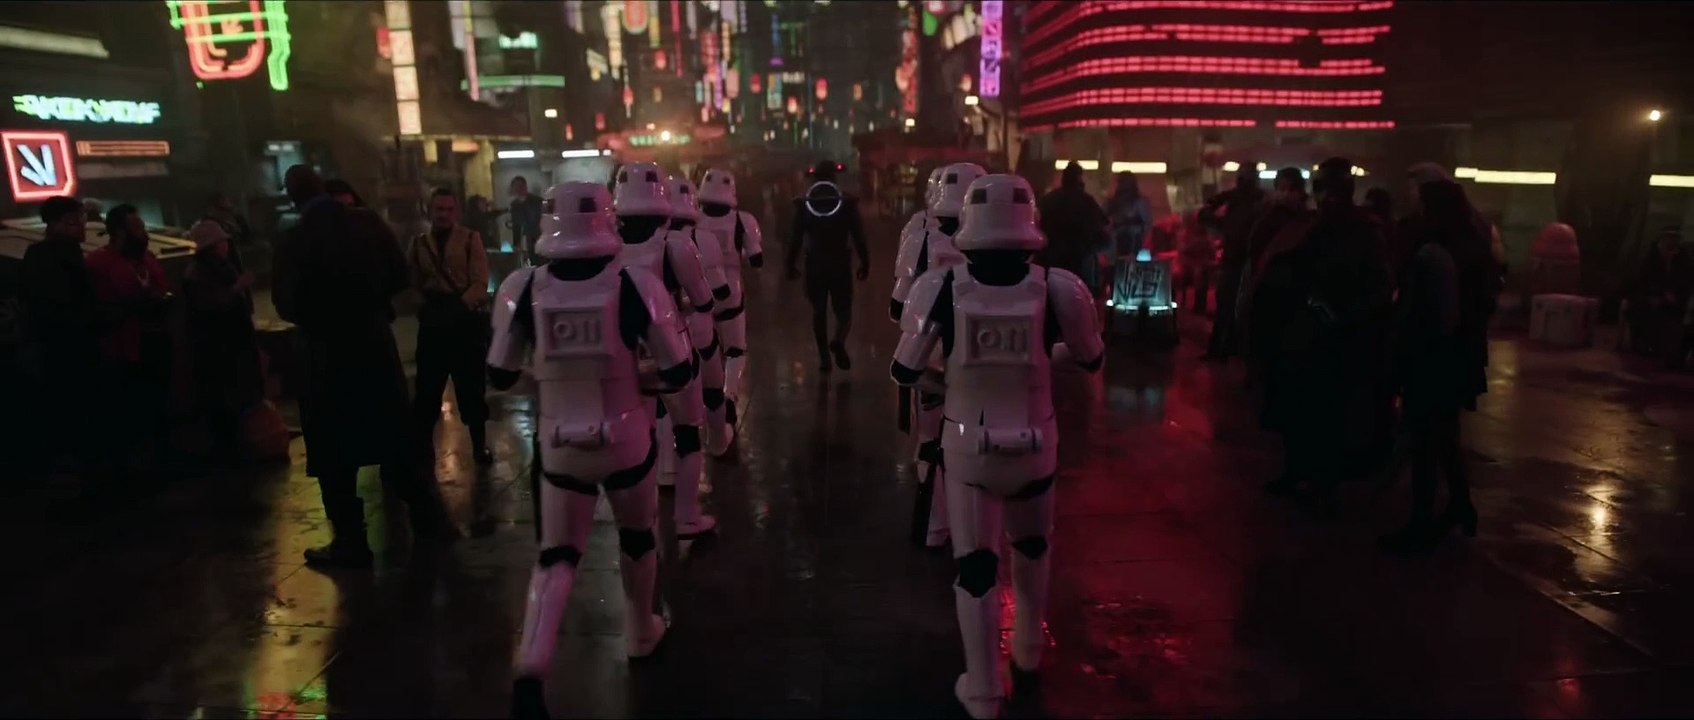 Epischer Trailer zur Star Wars Serie 'Obi Wan Kenobi'